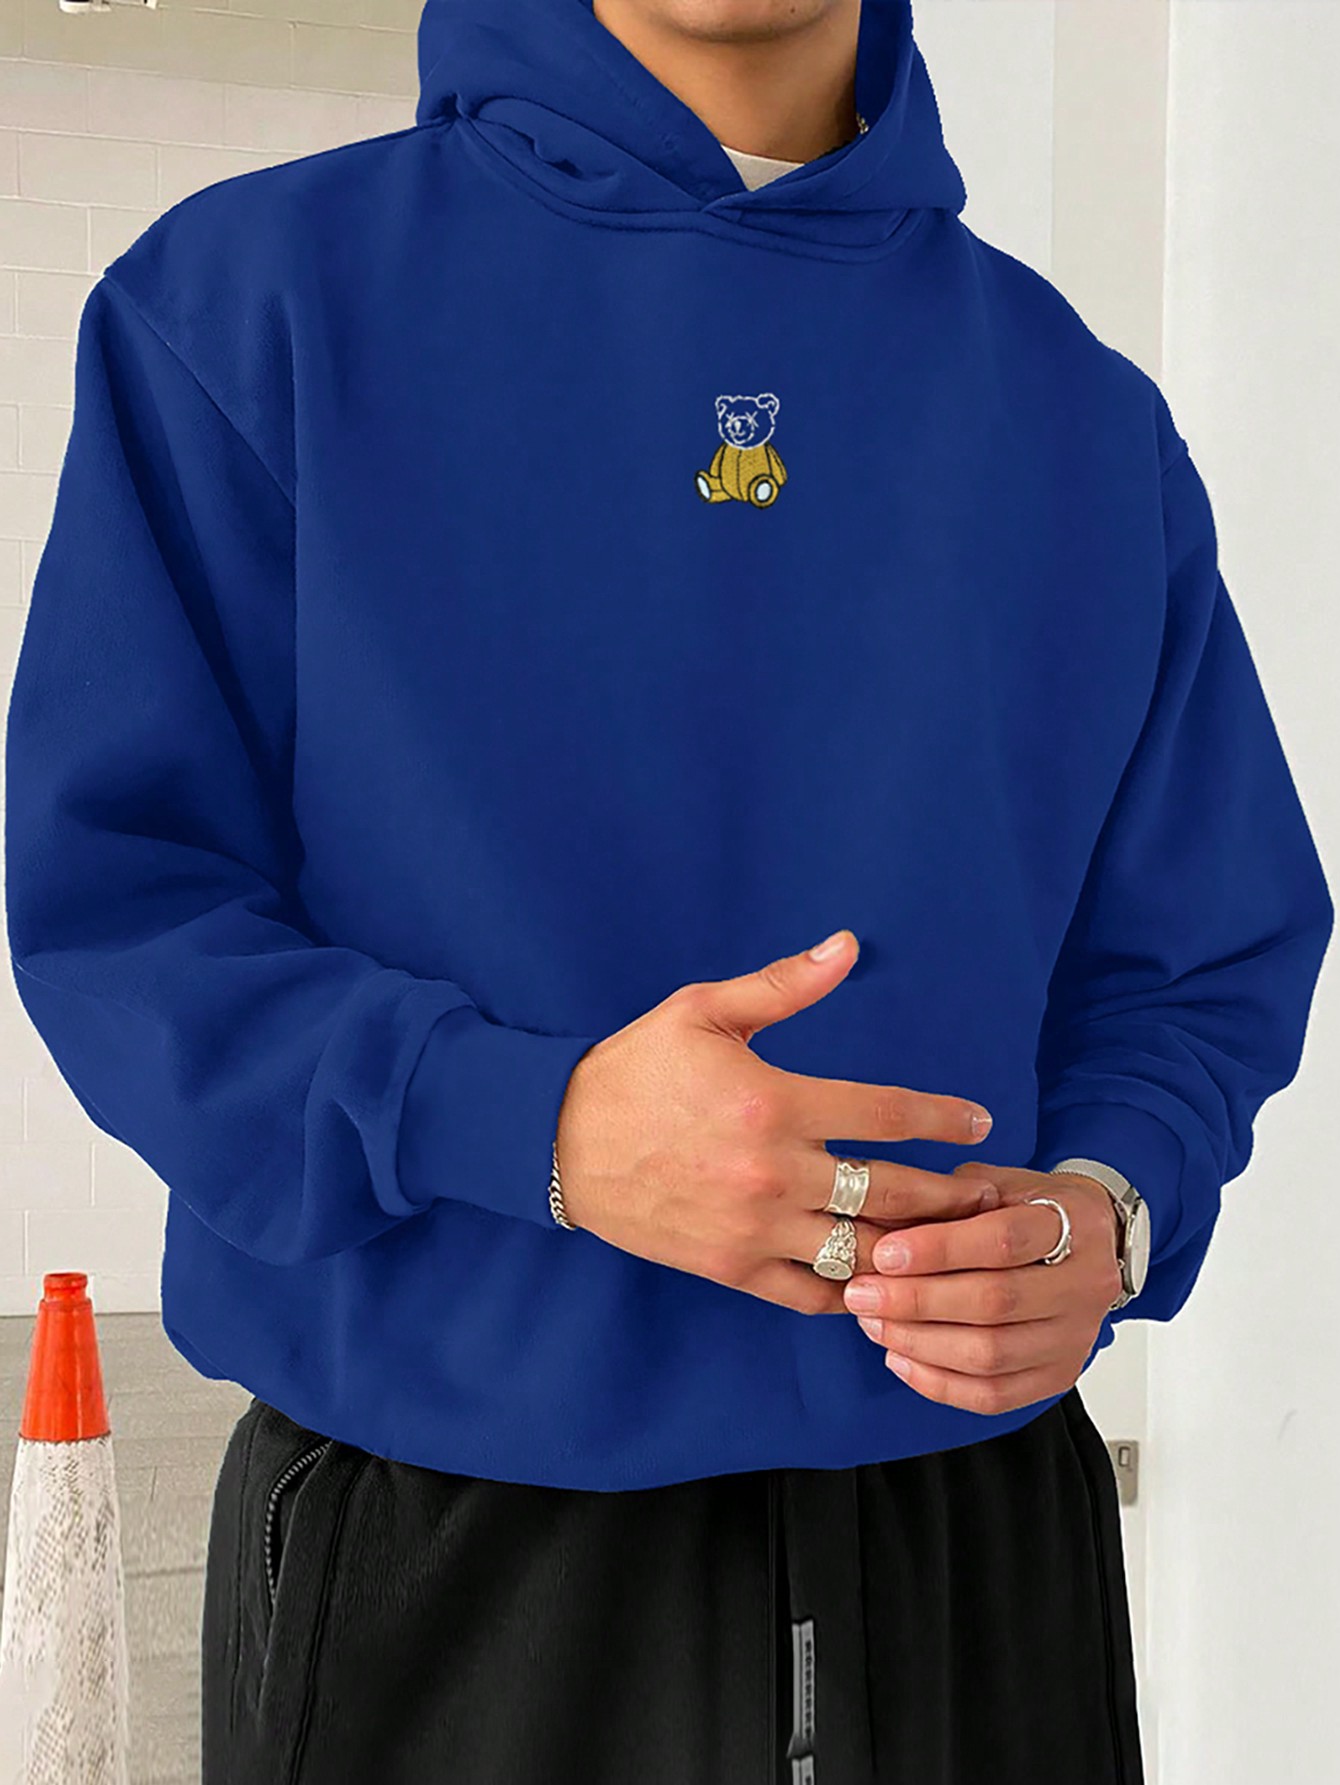 Мужская толстовка с капюшоном Manfinity Hypemode, синий и белый мужская повседневная флисовая толстовка с капюшоном manfinity hypemode черный